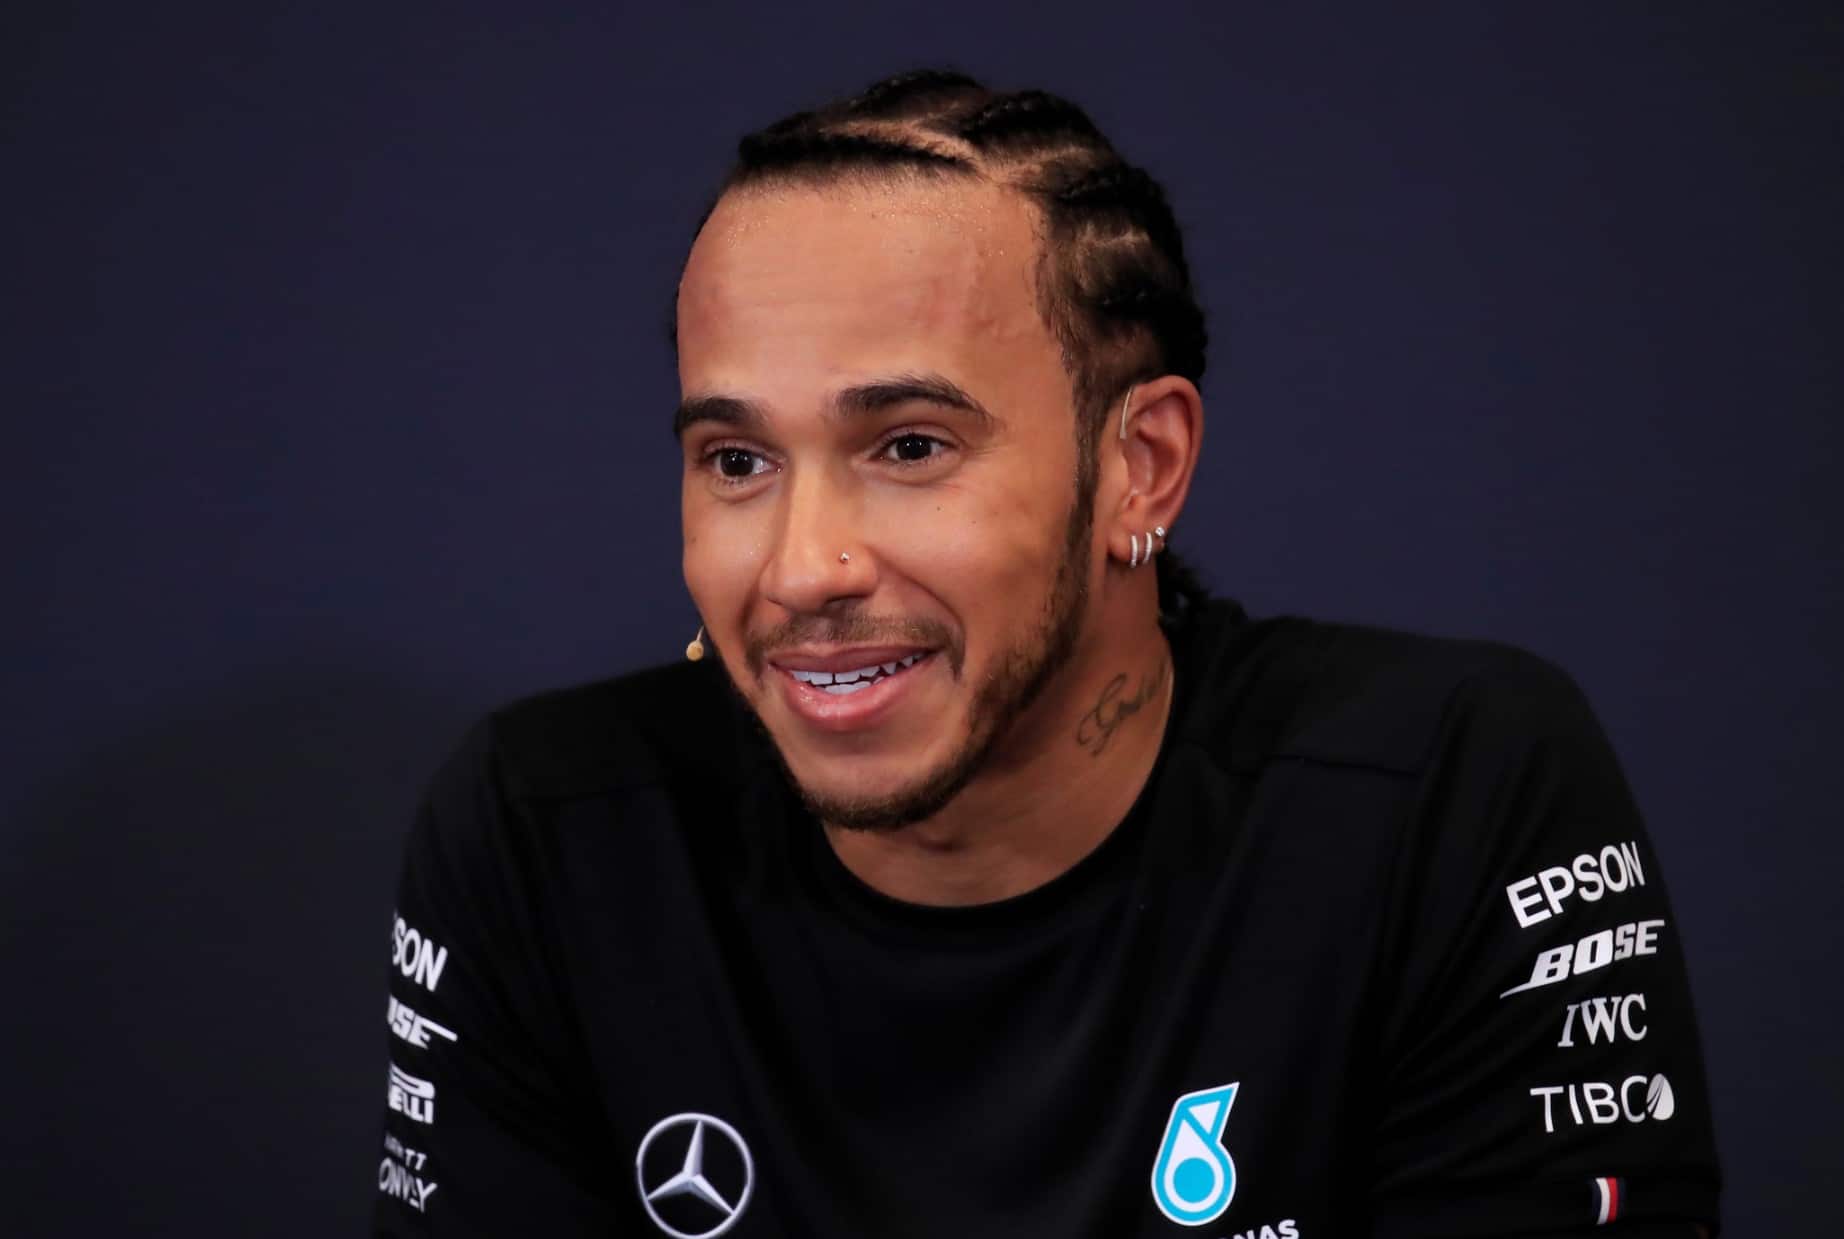 Lewis Hamilton seals his sixth F1 title at US Grand Prix